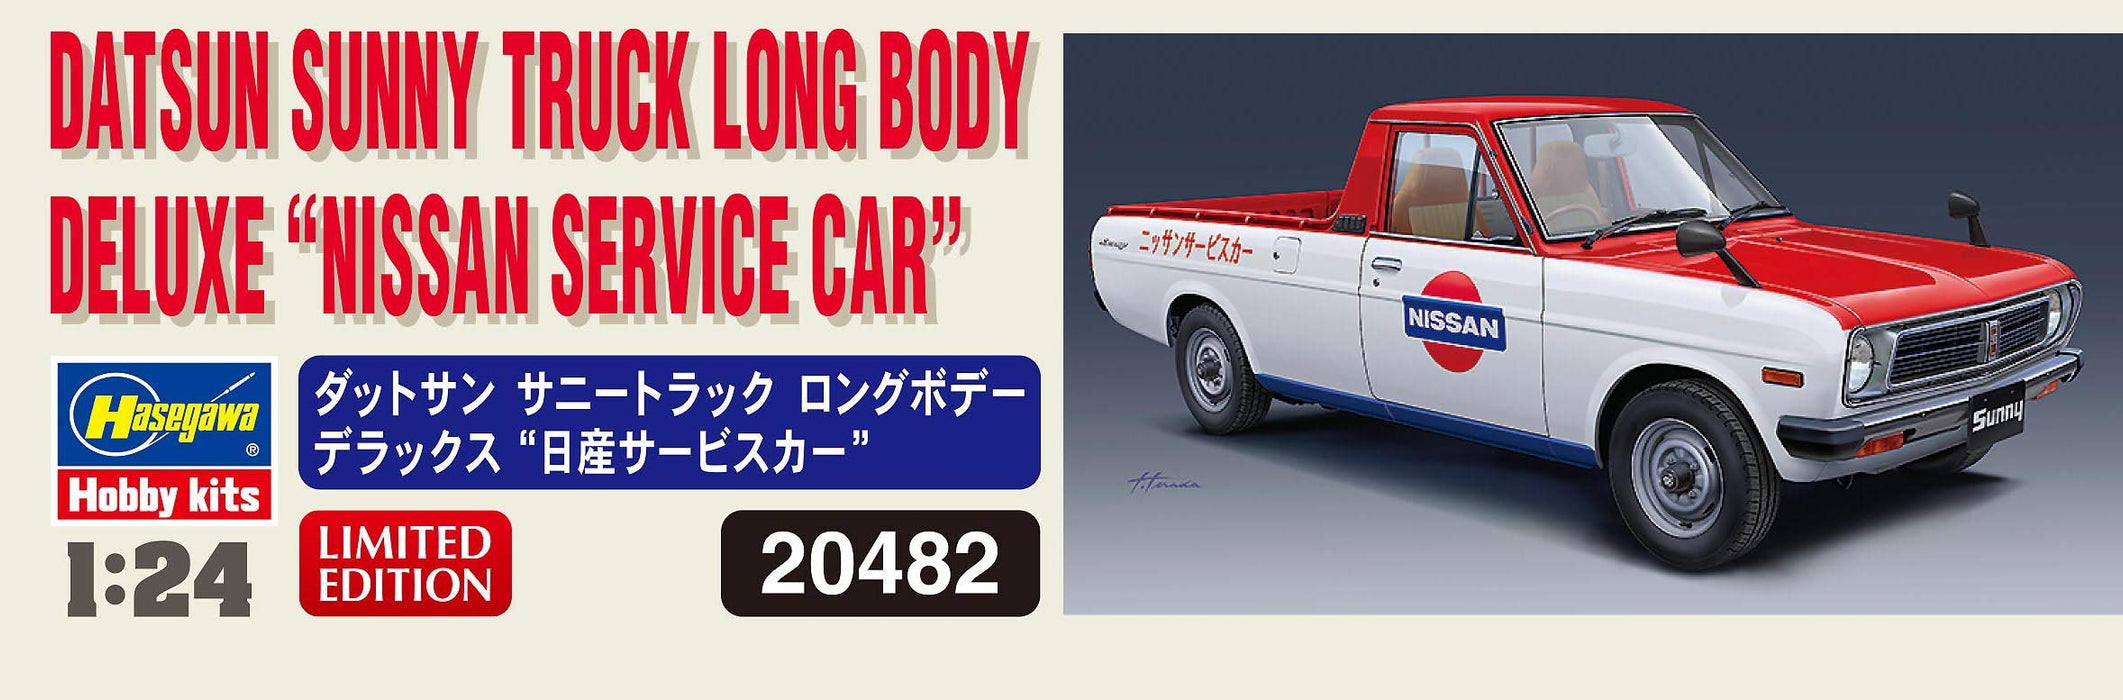 Hasegawa 1/24 Datsun Sunny Truck Long Body Deluxe Nissan Service Car Japanese Car Model